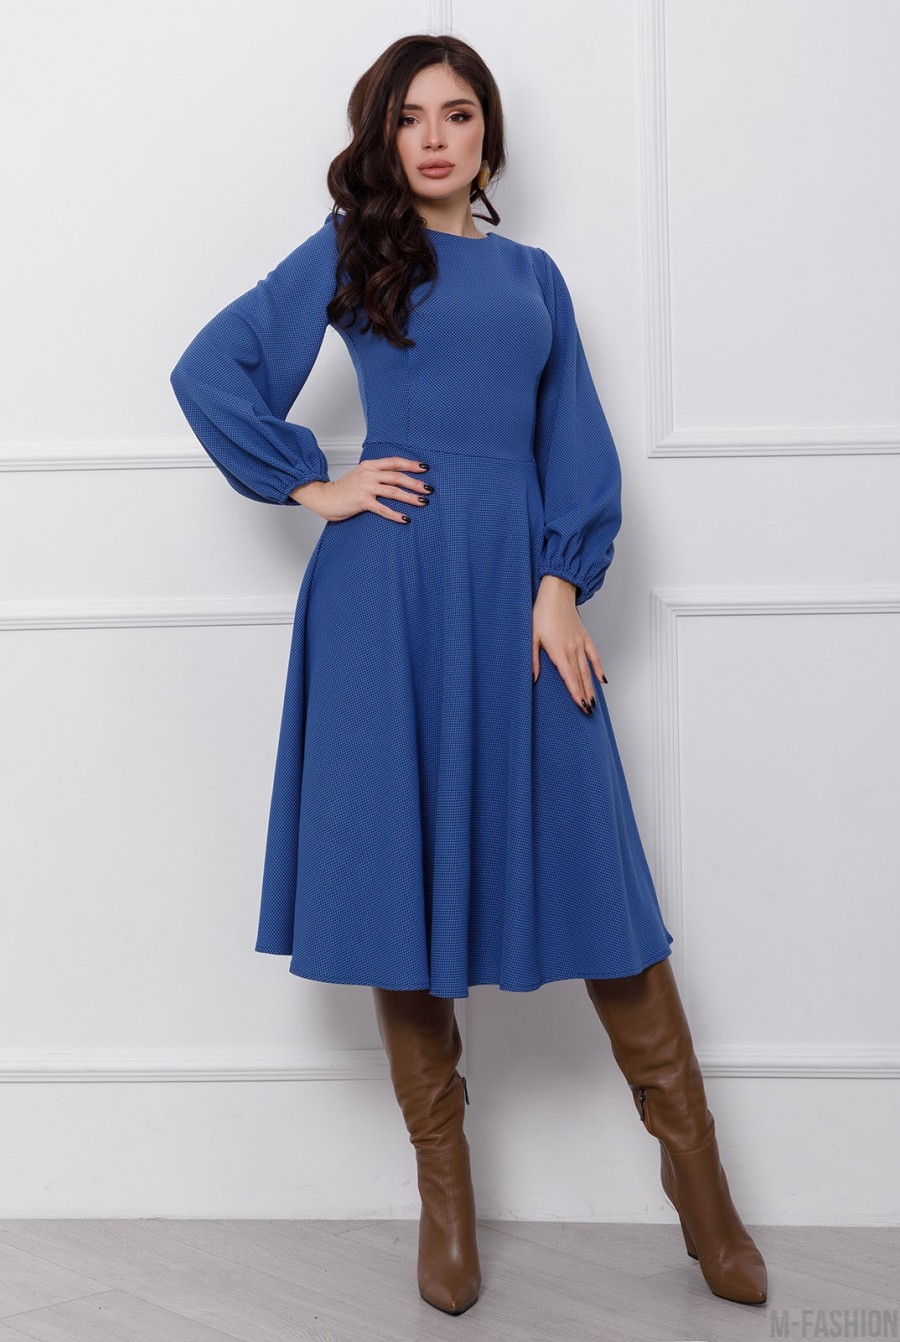 Синее классическое платье с объемными рукавами - Фото 1